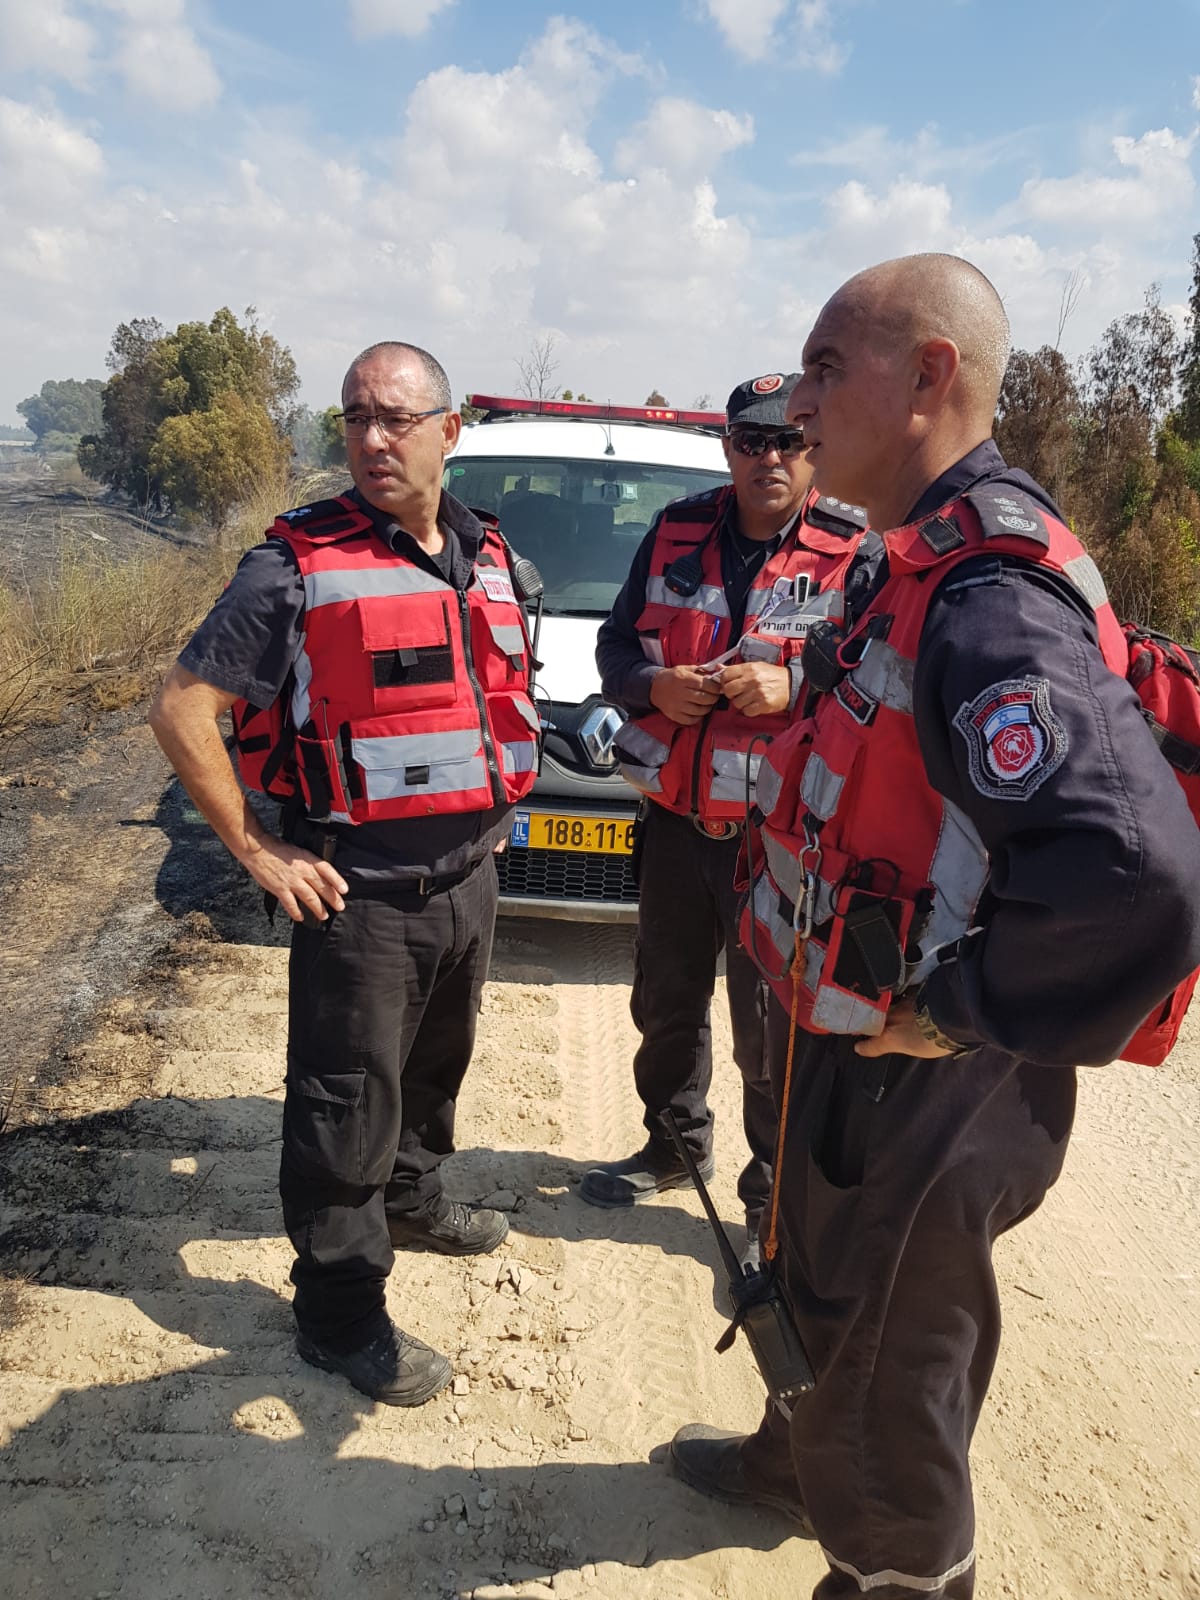 כוחות כיבוי והצלה בשריפה בנחל שקמה, 12 באוקטובר 2018 (צילום: דוברות כיבוי והצלה מחוז דרום)